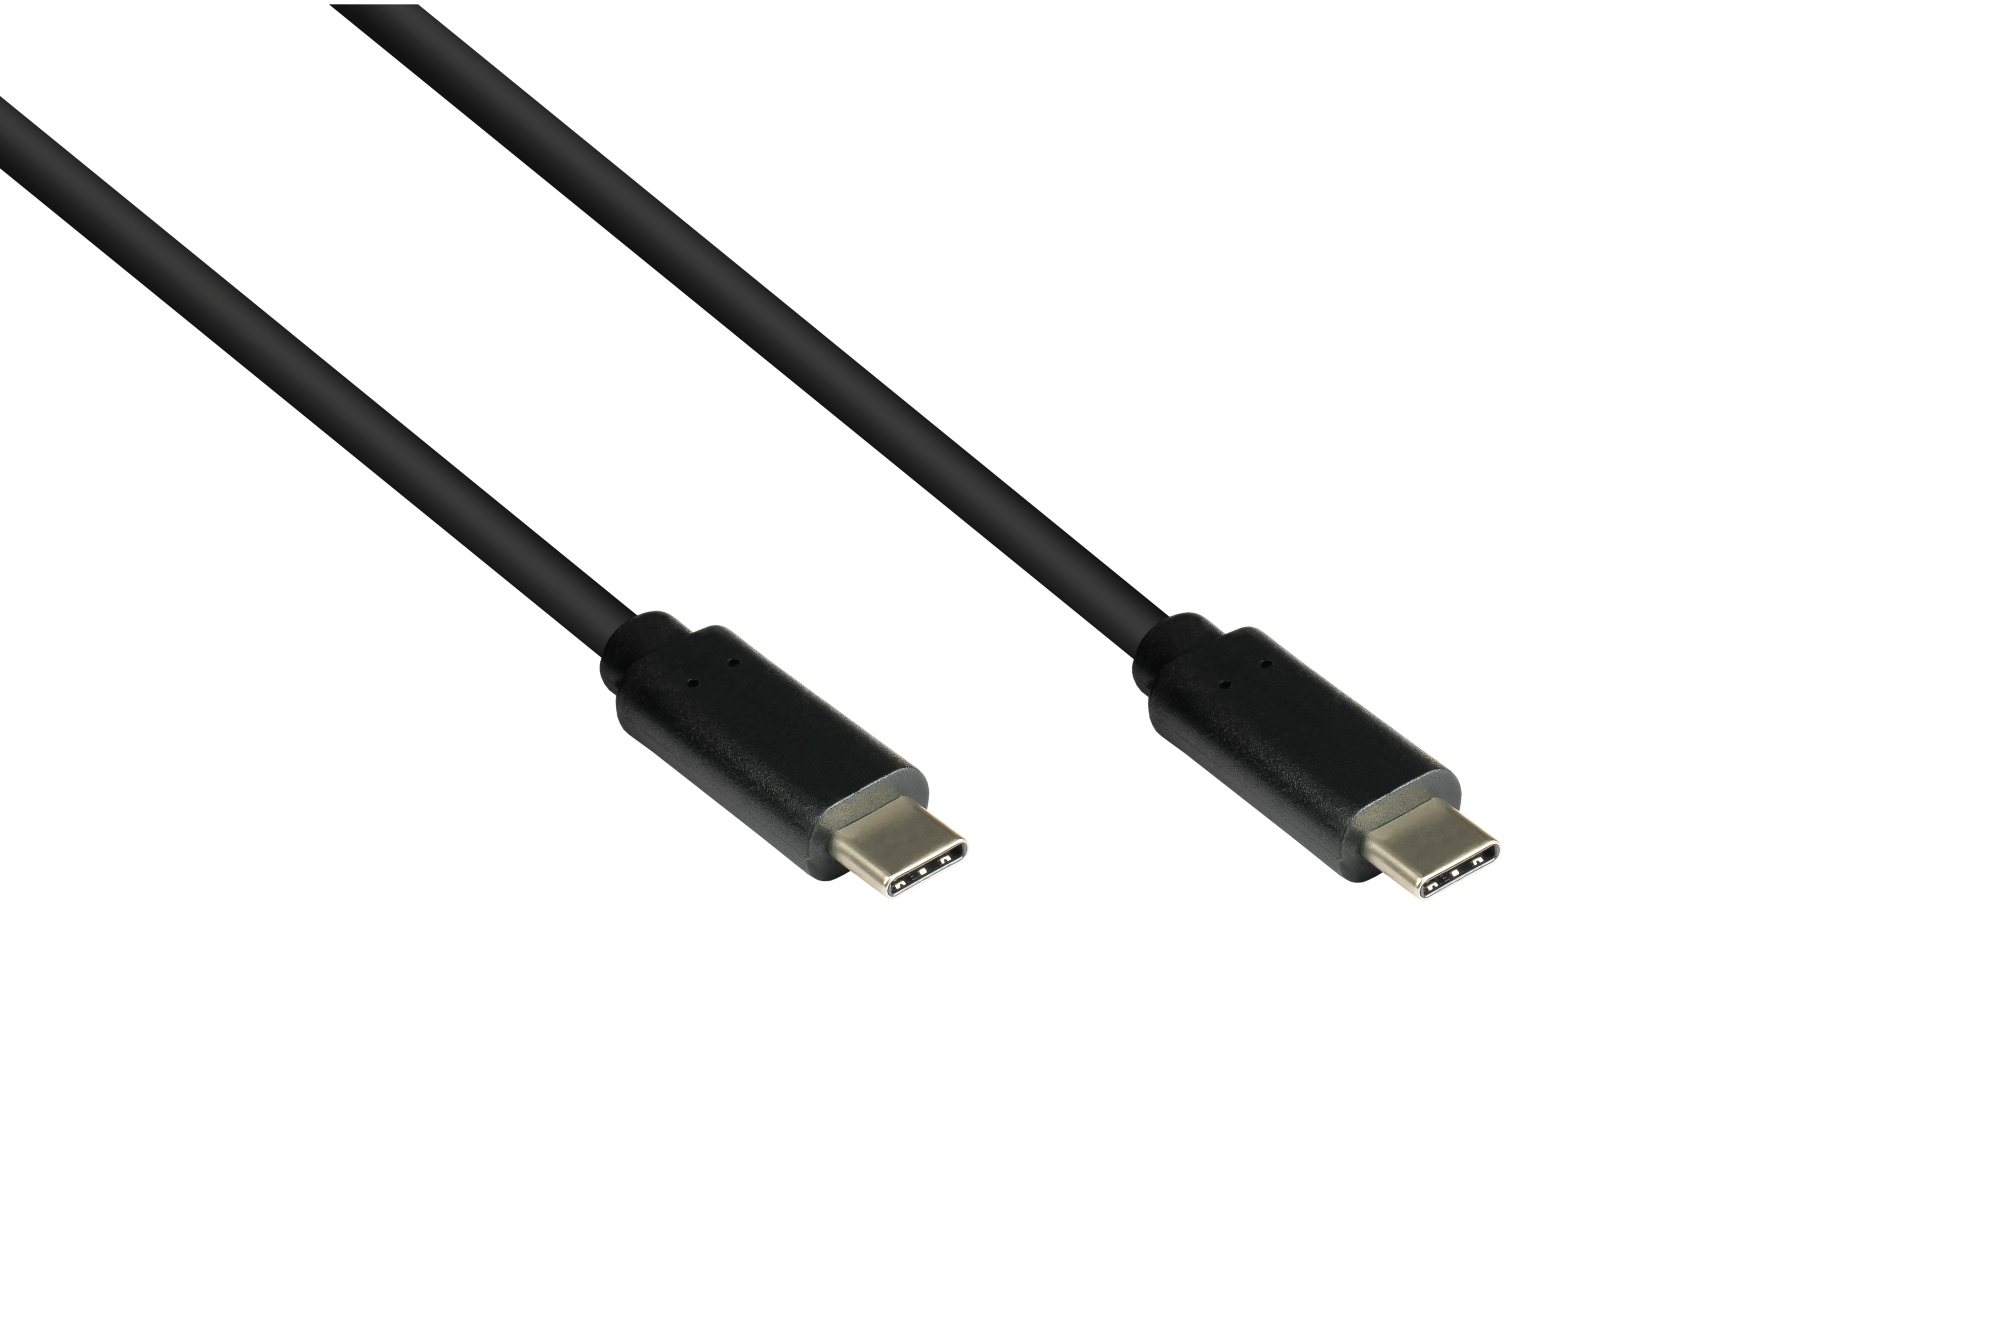 Lade- und Datenkabel USB 3.1 (Gen.1), USB-C™ Stecker beidseitig, CU, schwarz, 1m